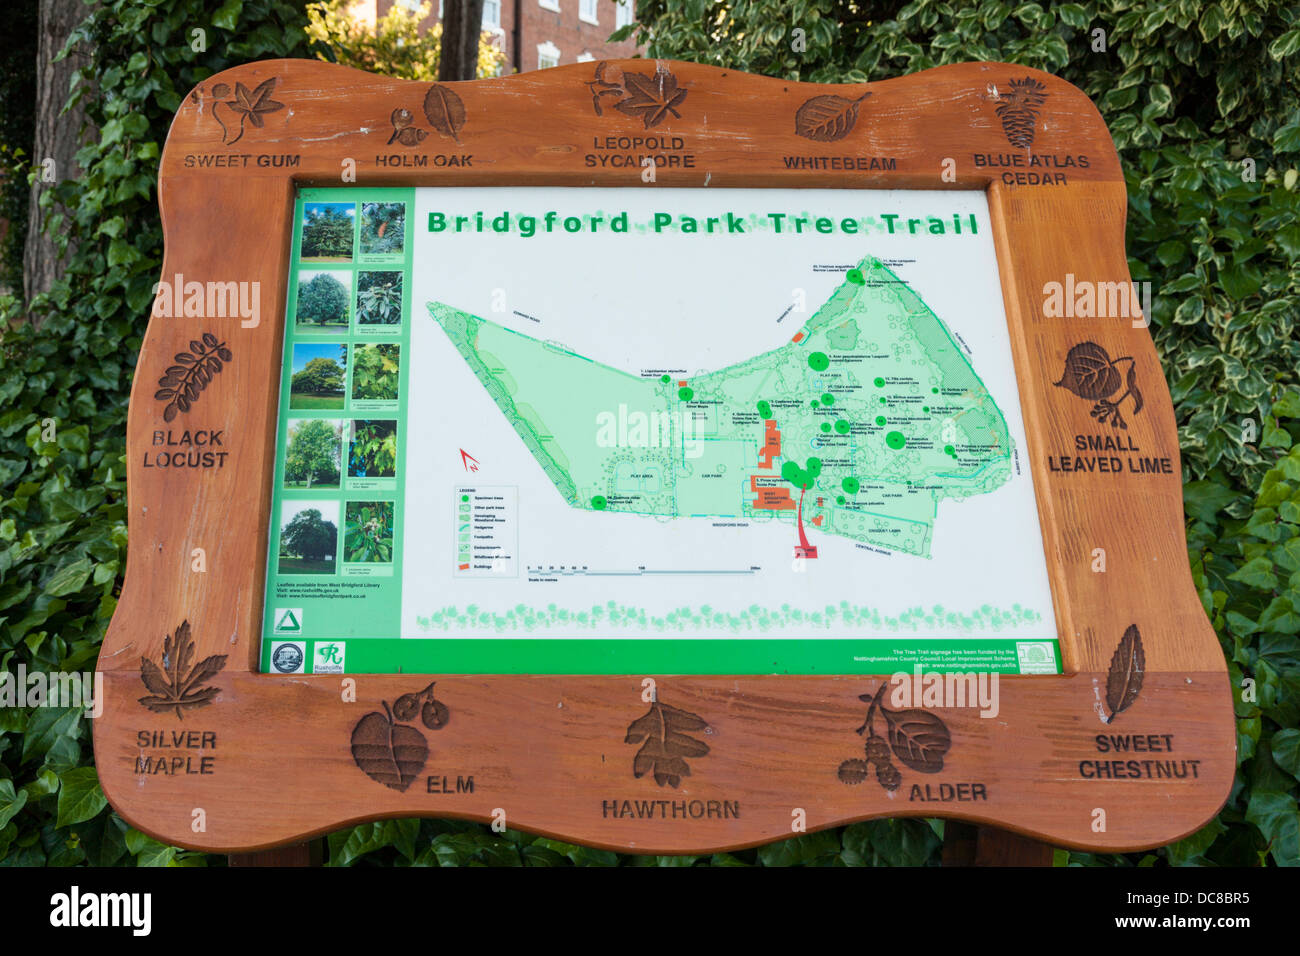 Un signe montrant un parcours accrobranche à Bridgford Park, West Bridgford, Lancashire, England, UK Banque D'Images